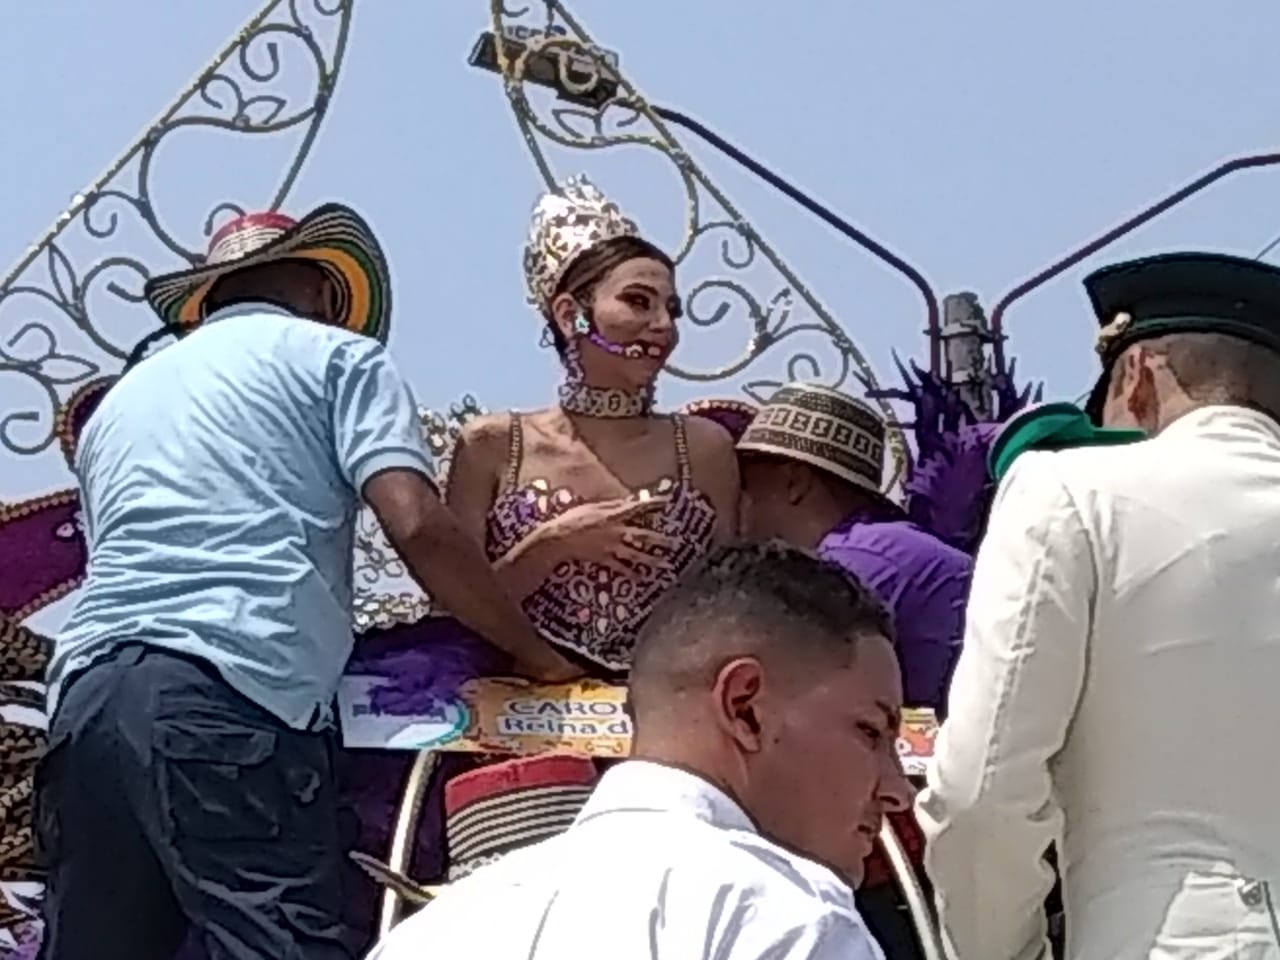 Momento en que era acondicionada en su carroza la Reina del Carnaval 2019, Carolina Segebre.